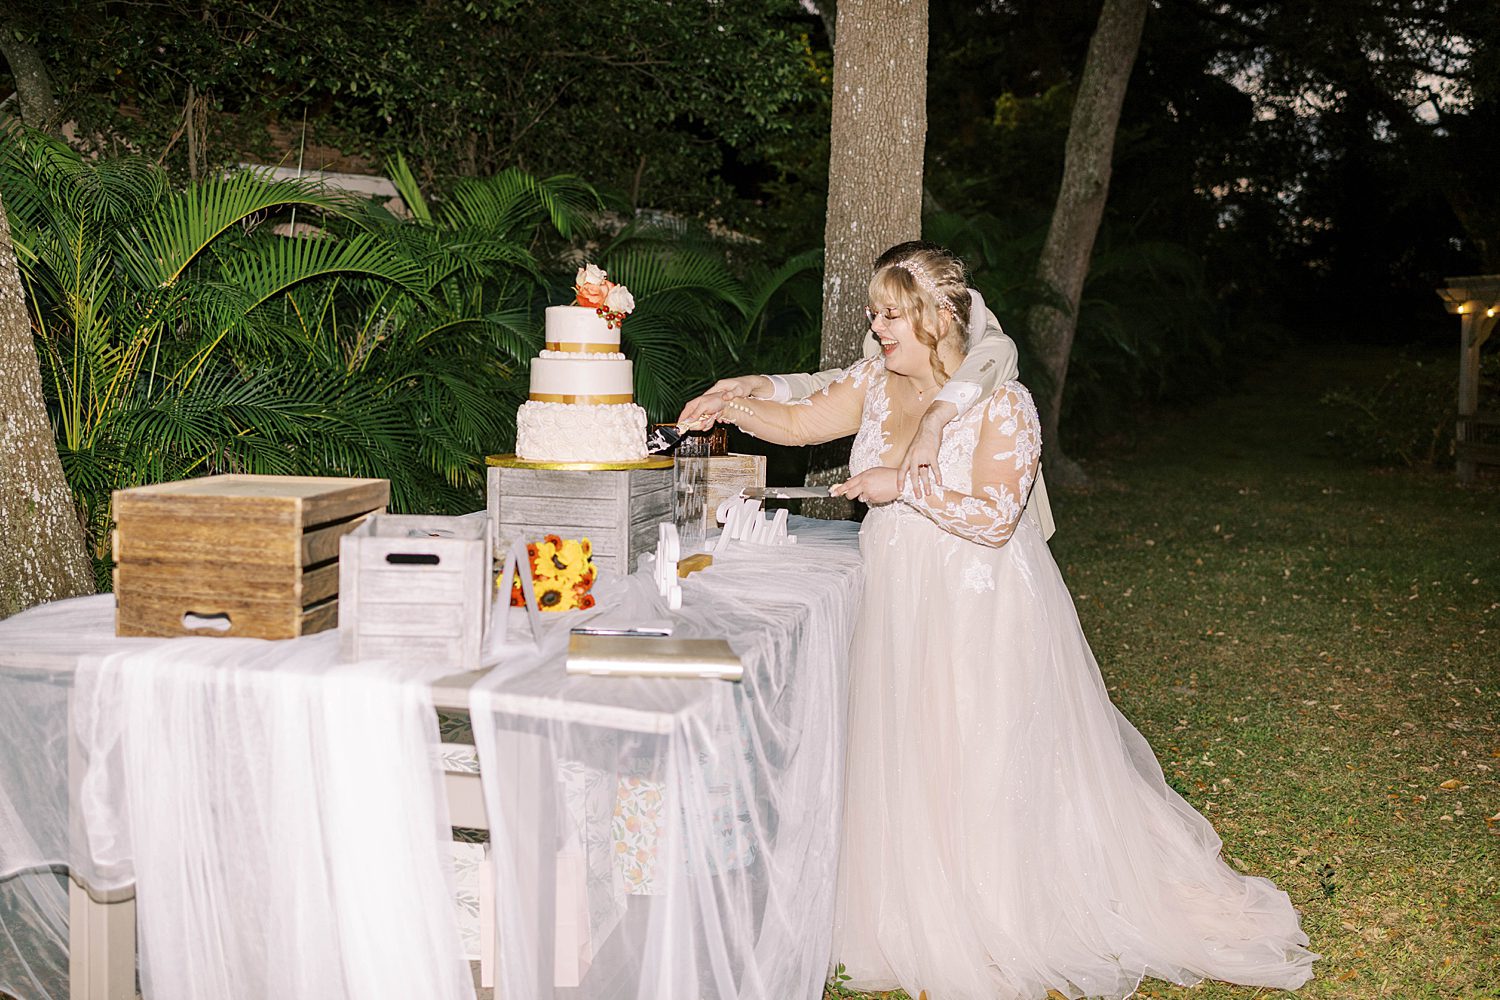 newlyweds cut wedding cake during Tampa FL wedding reception 